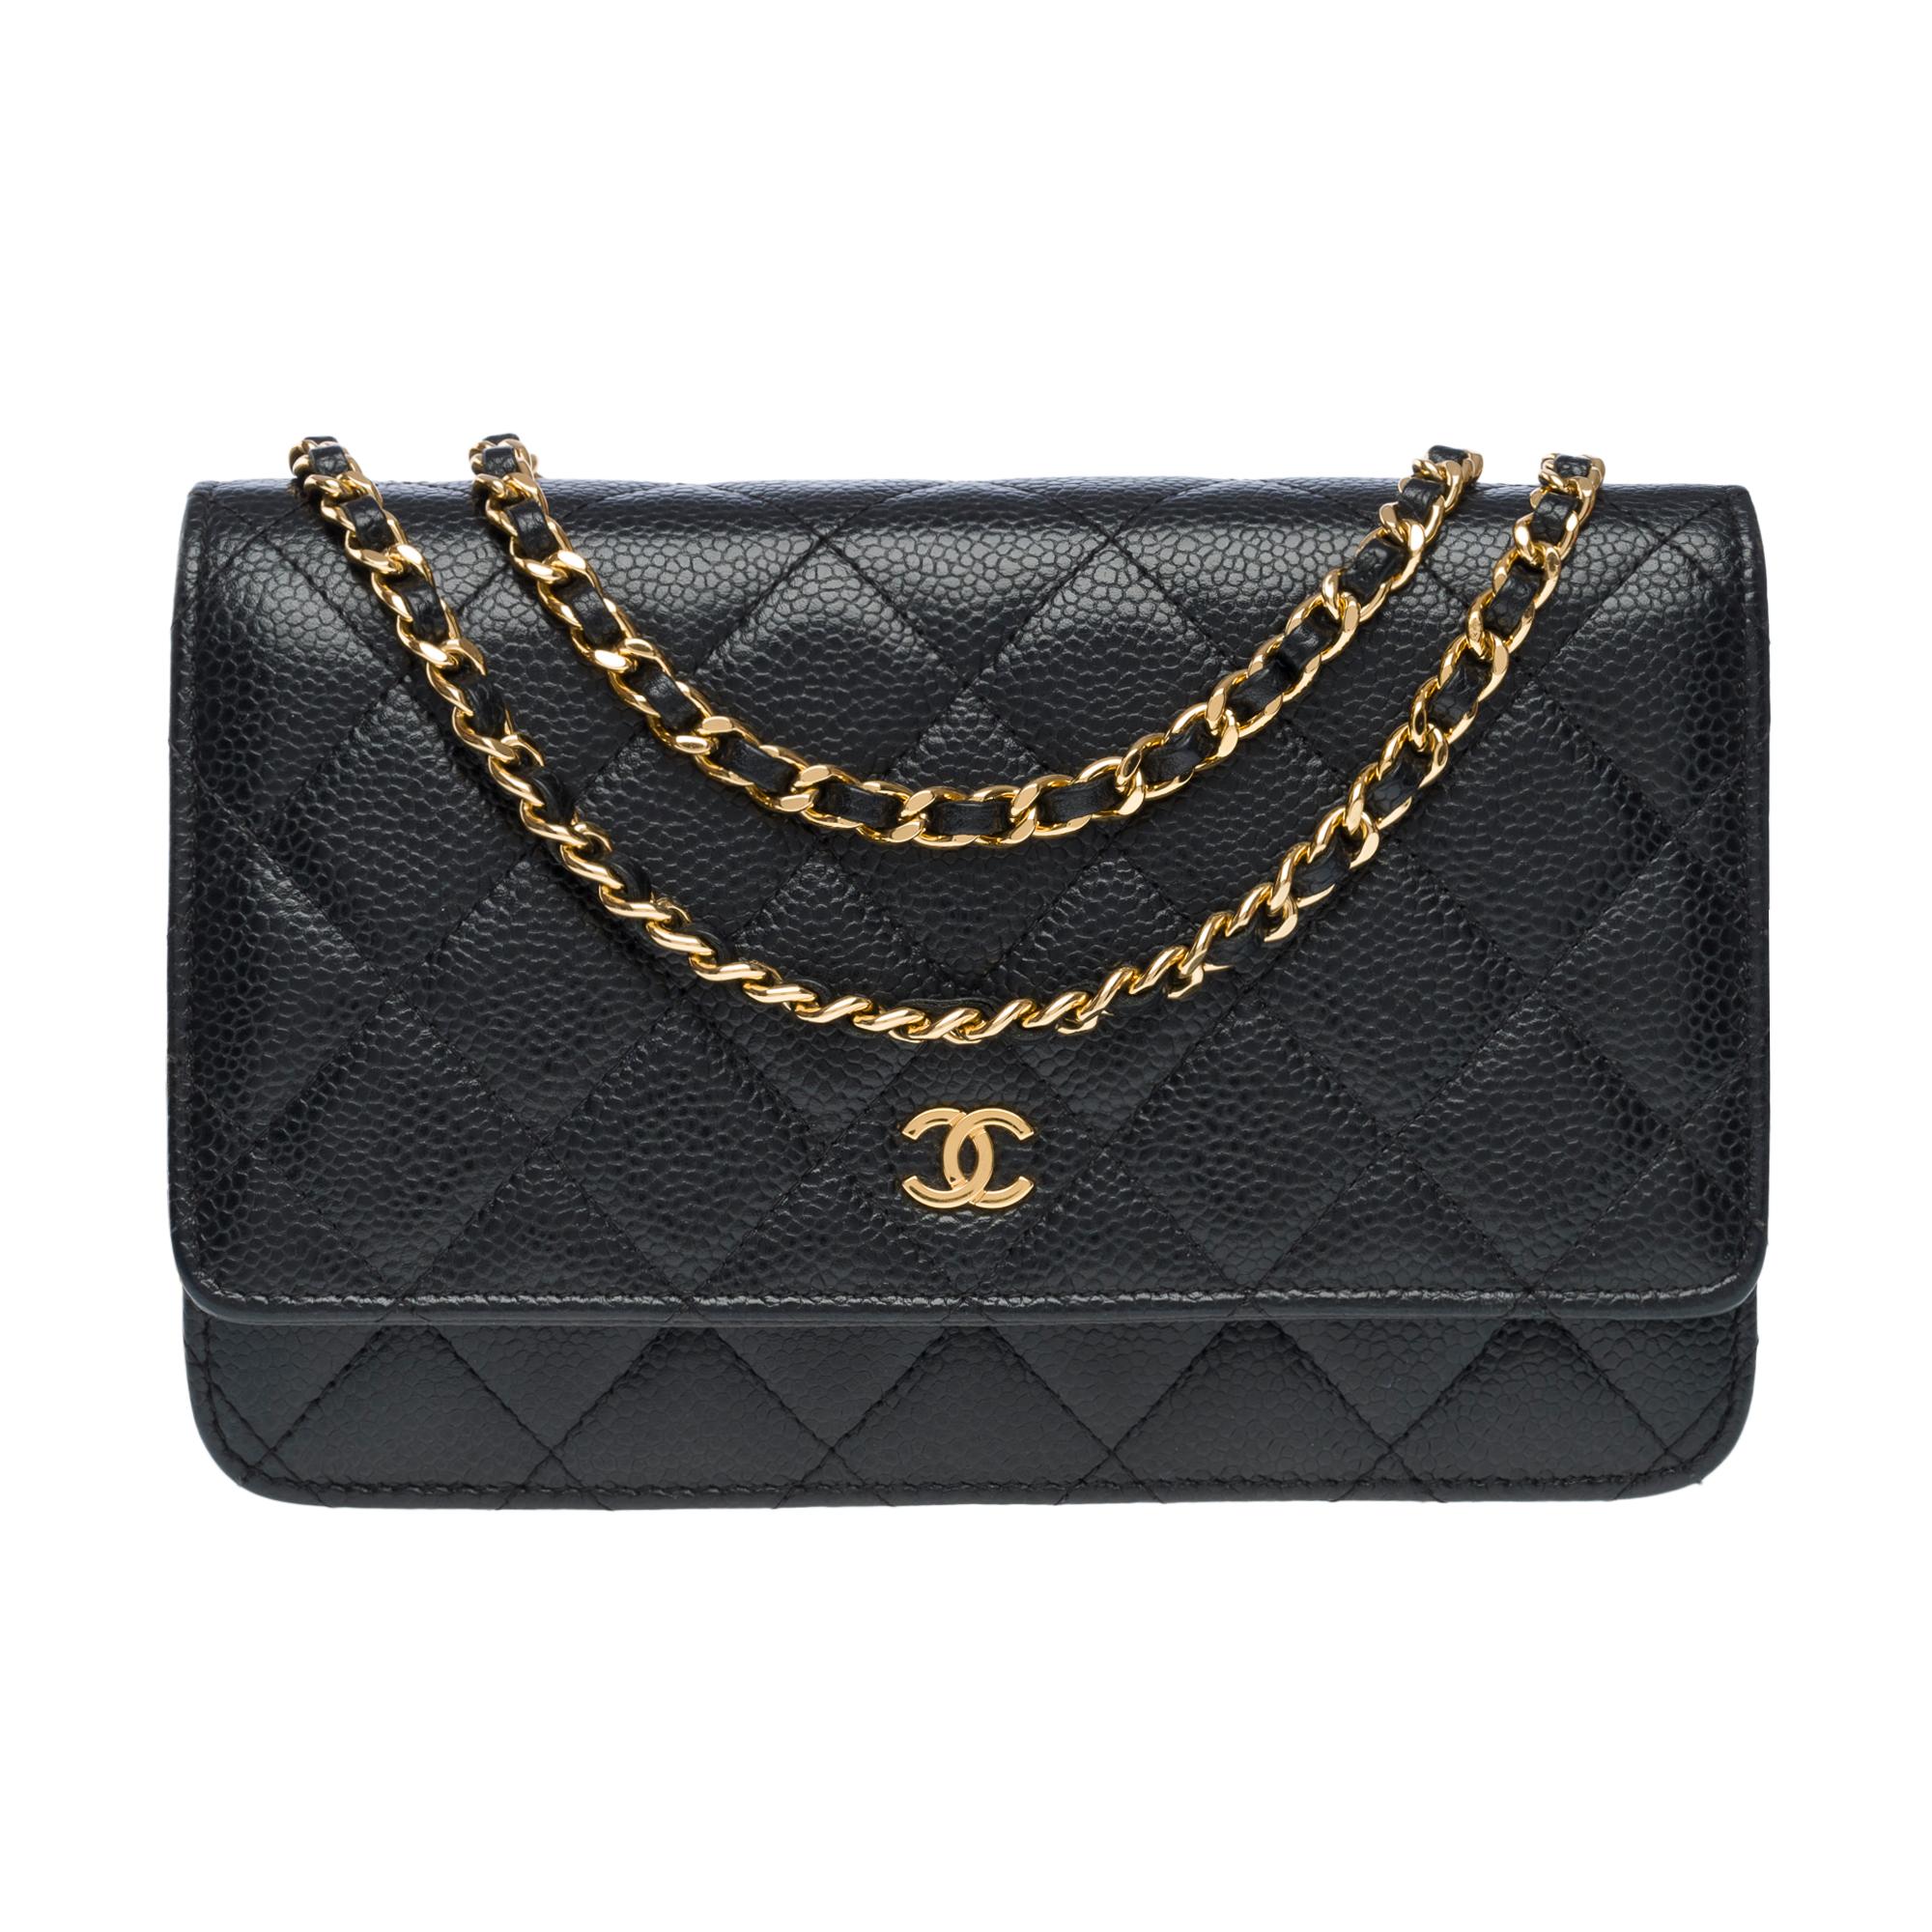 Portefeuille Chanel sur chaîne (WOC)  sac à bandoulière en cuir Caviar matelassé noir, GHW Excellent état - En vente à Paris, IDF